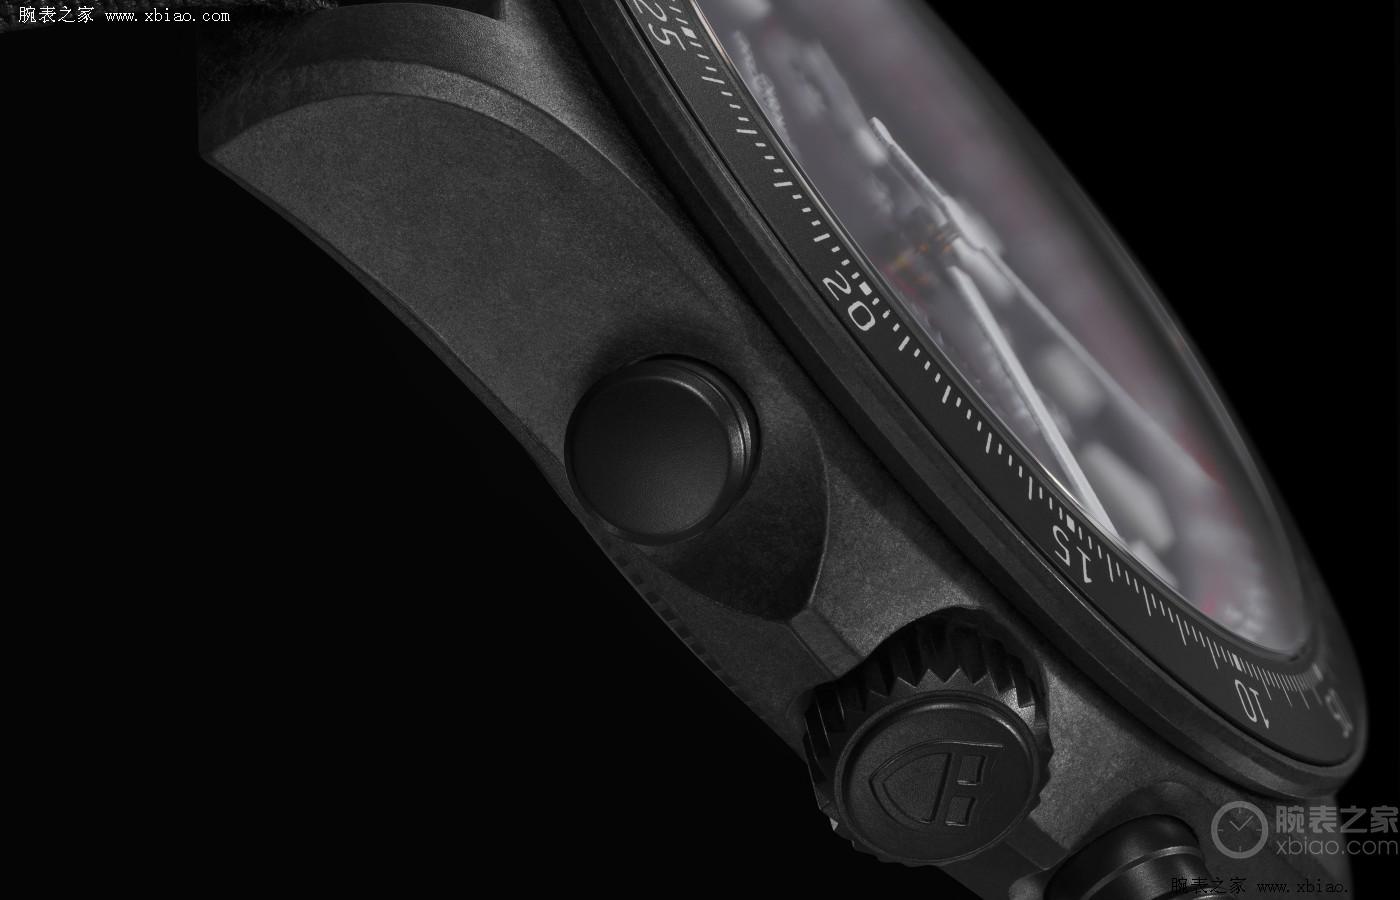 公价4万2，帝舵发布领潜型FXD计时腕表“专业骑行版”-第4张图片